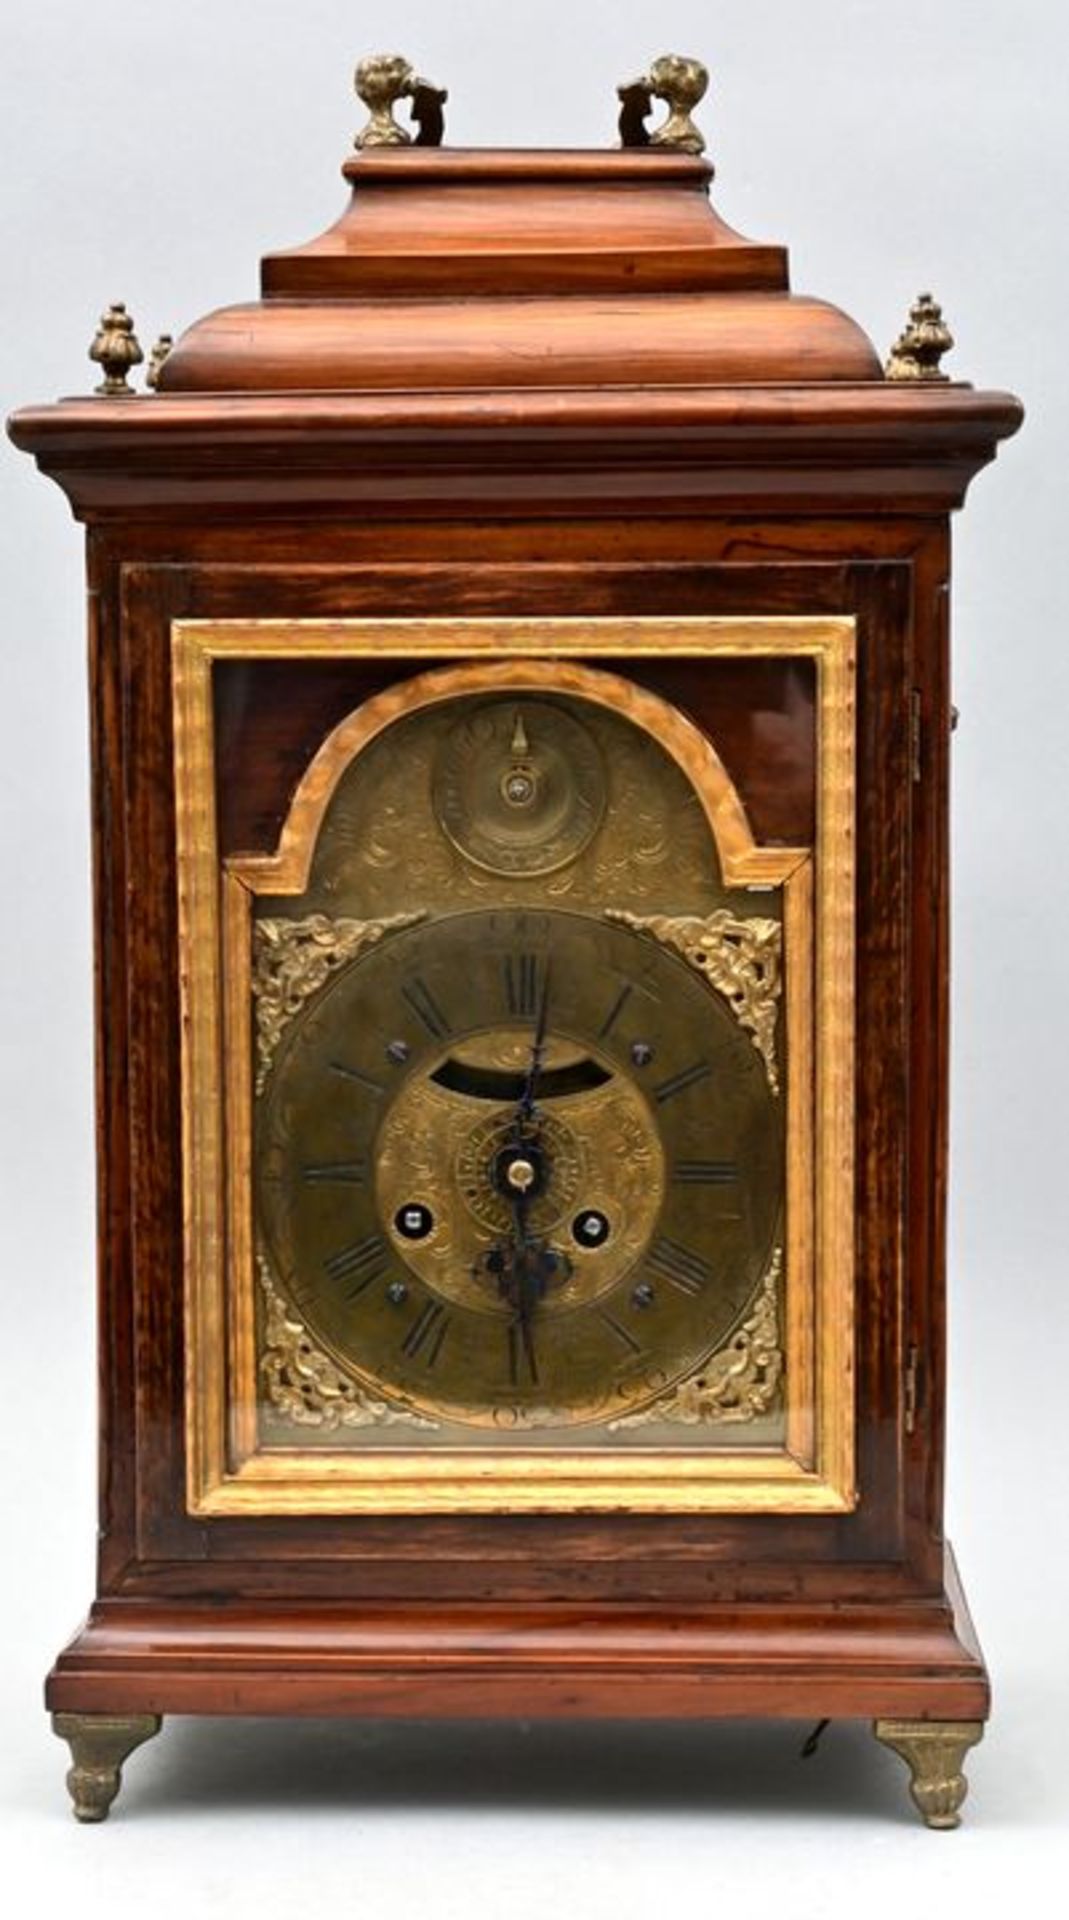 Stutzuhr / Bracket clock - Image 2 of 8